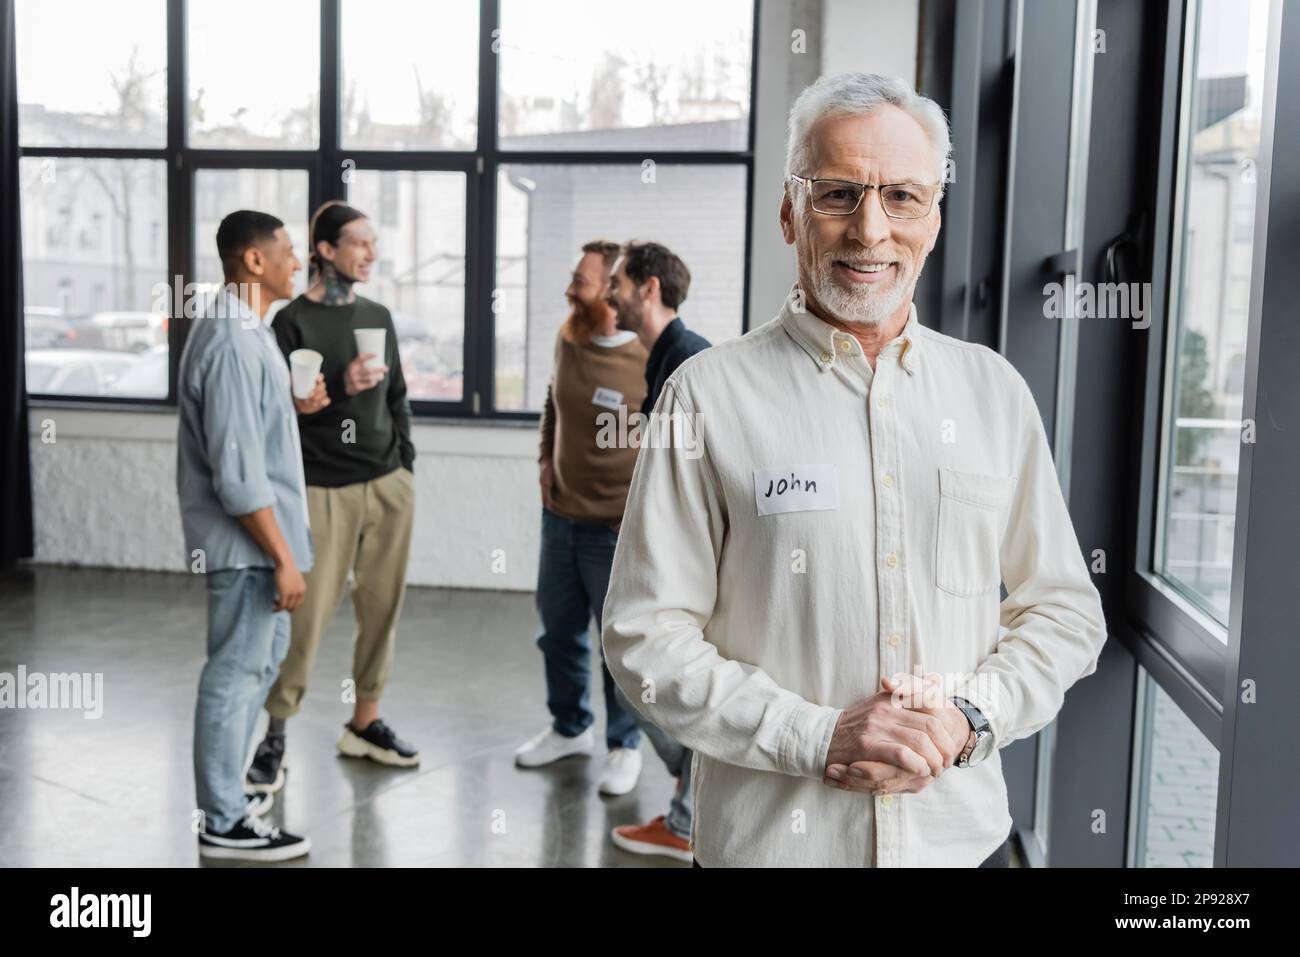 Sorridente uomo di mezza età che guarda la macchina fotografica vicino a un gruppo sfocato durante la riunione degli alcolisti nel centro di riabilitazione, immagine di scorta Foto Stock